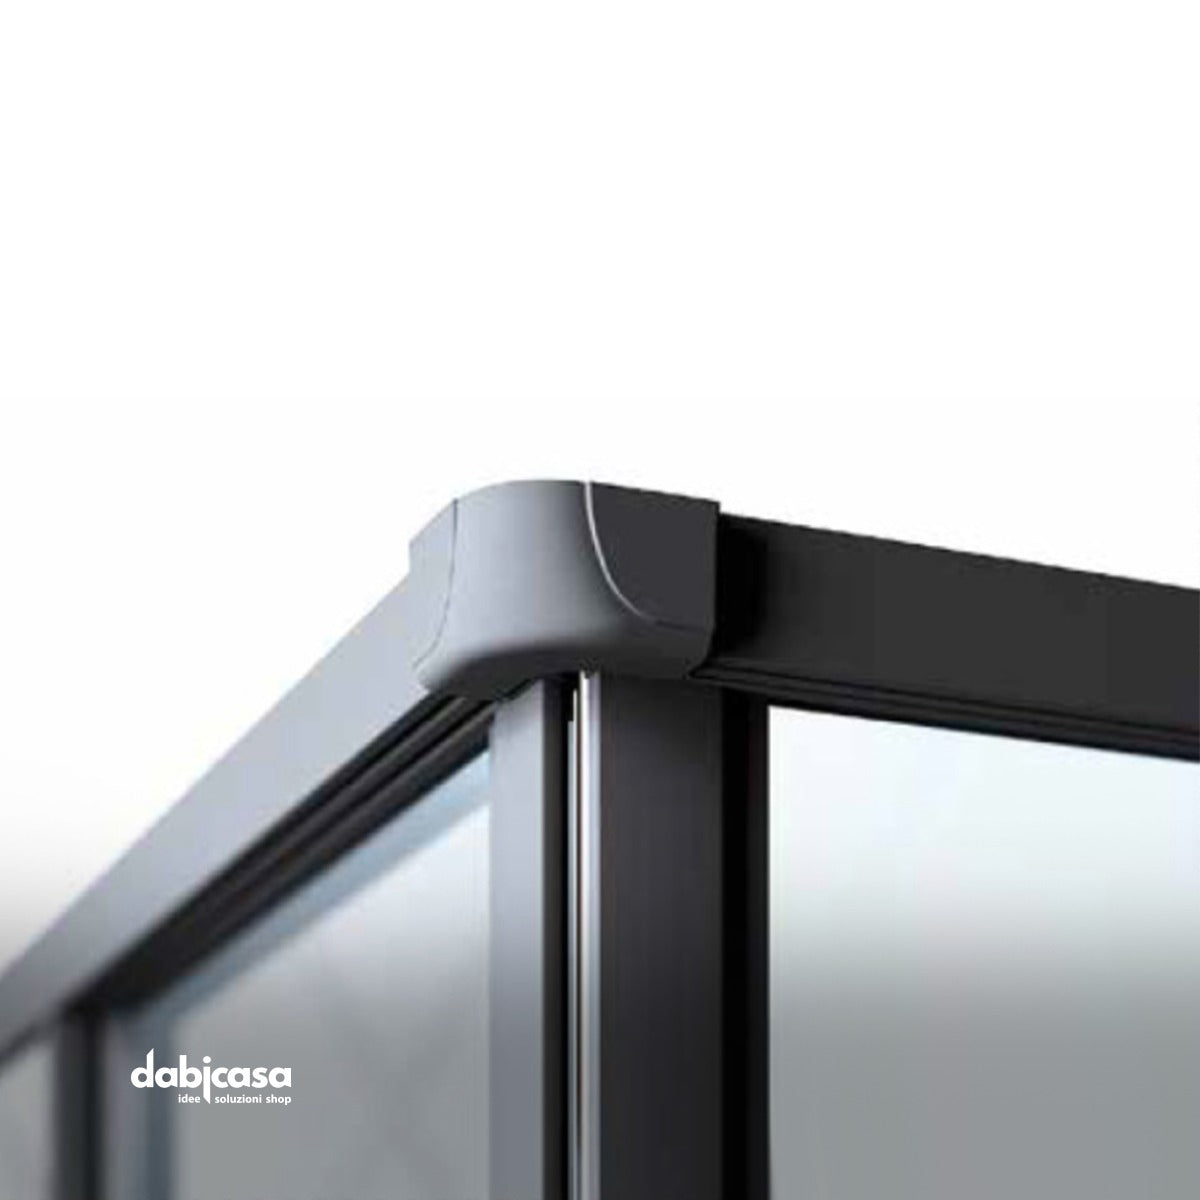 Box doccia "New Smeralda" angolare 80x120 in alluminio e pannello in vetro con profili nero essenza freeshipping - Dabicasa